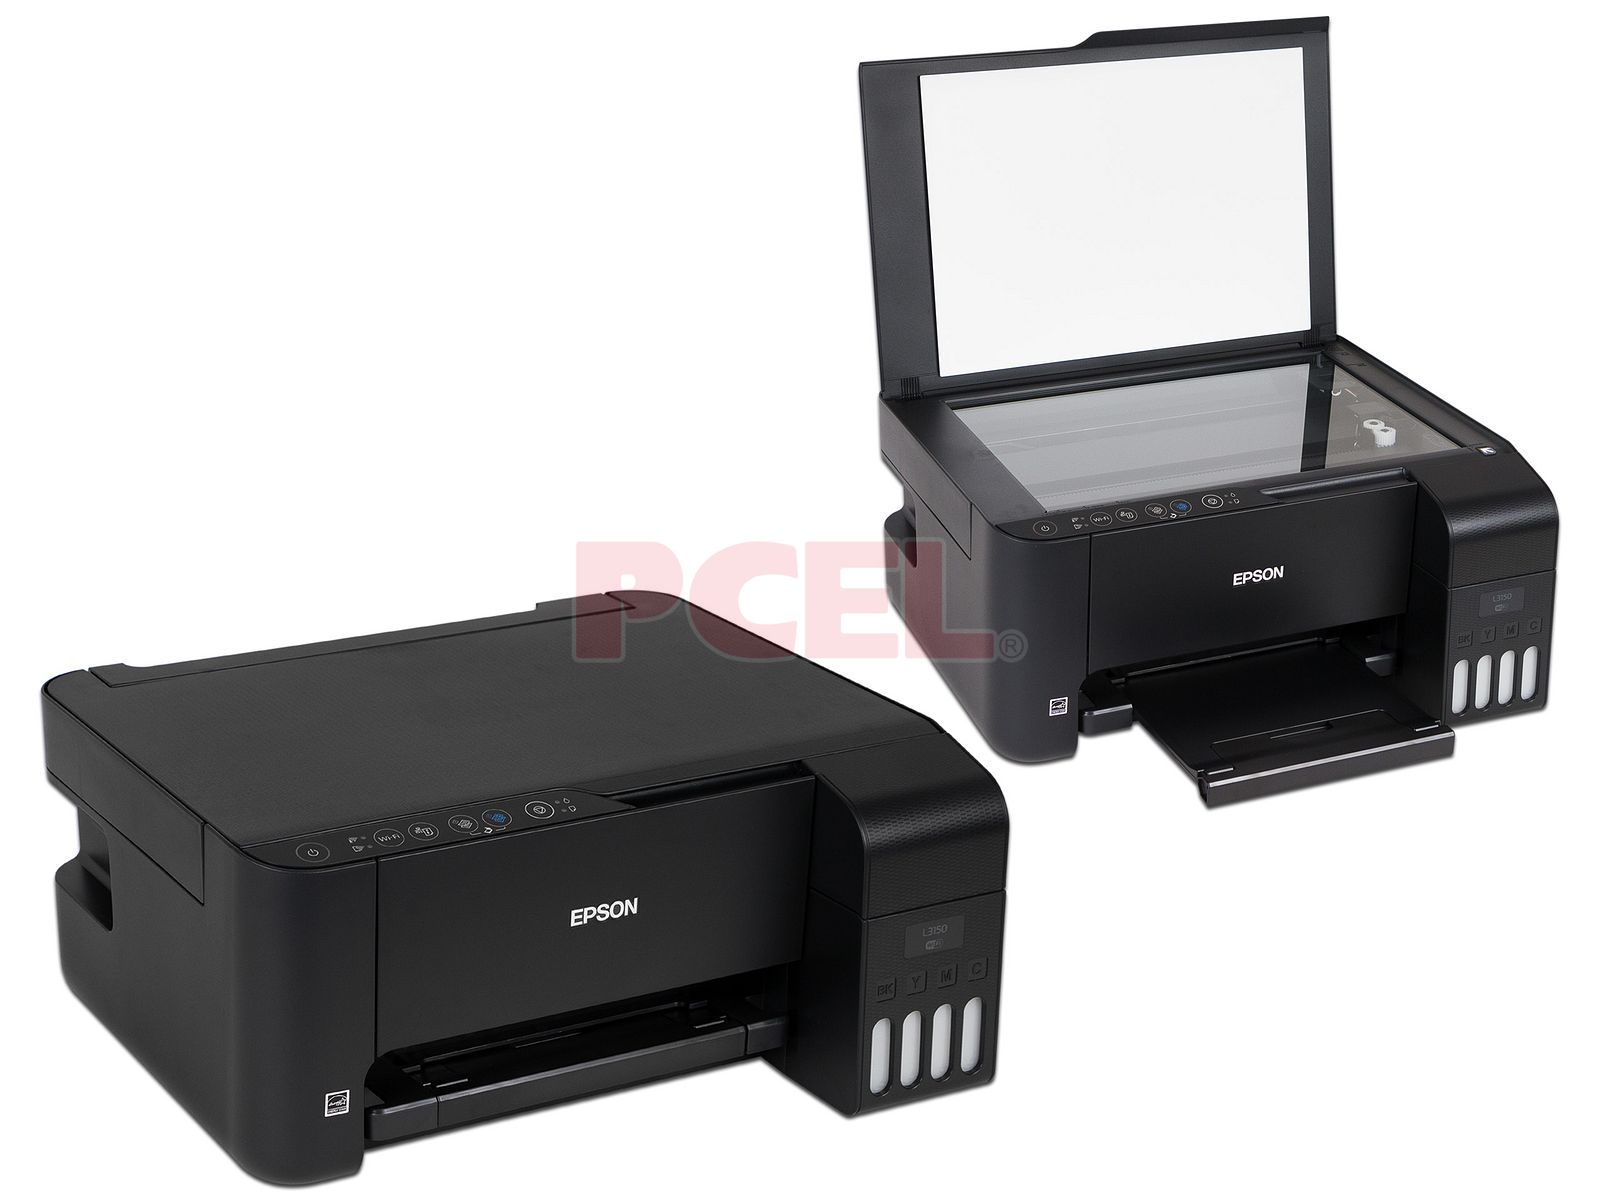 Paquete de dos Multifuncionales Epson EcoTank L3150, Impresora, Copiadora y  Escáner, Sistema de Tanques de Tinta, Wi-Fi, USB.